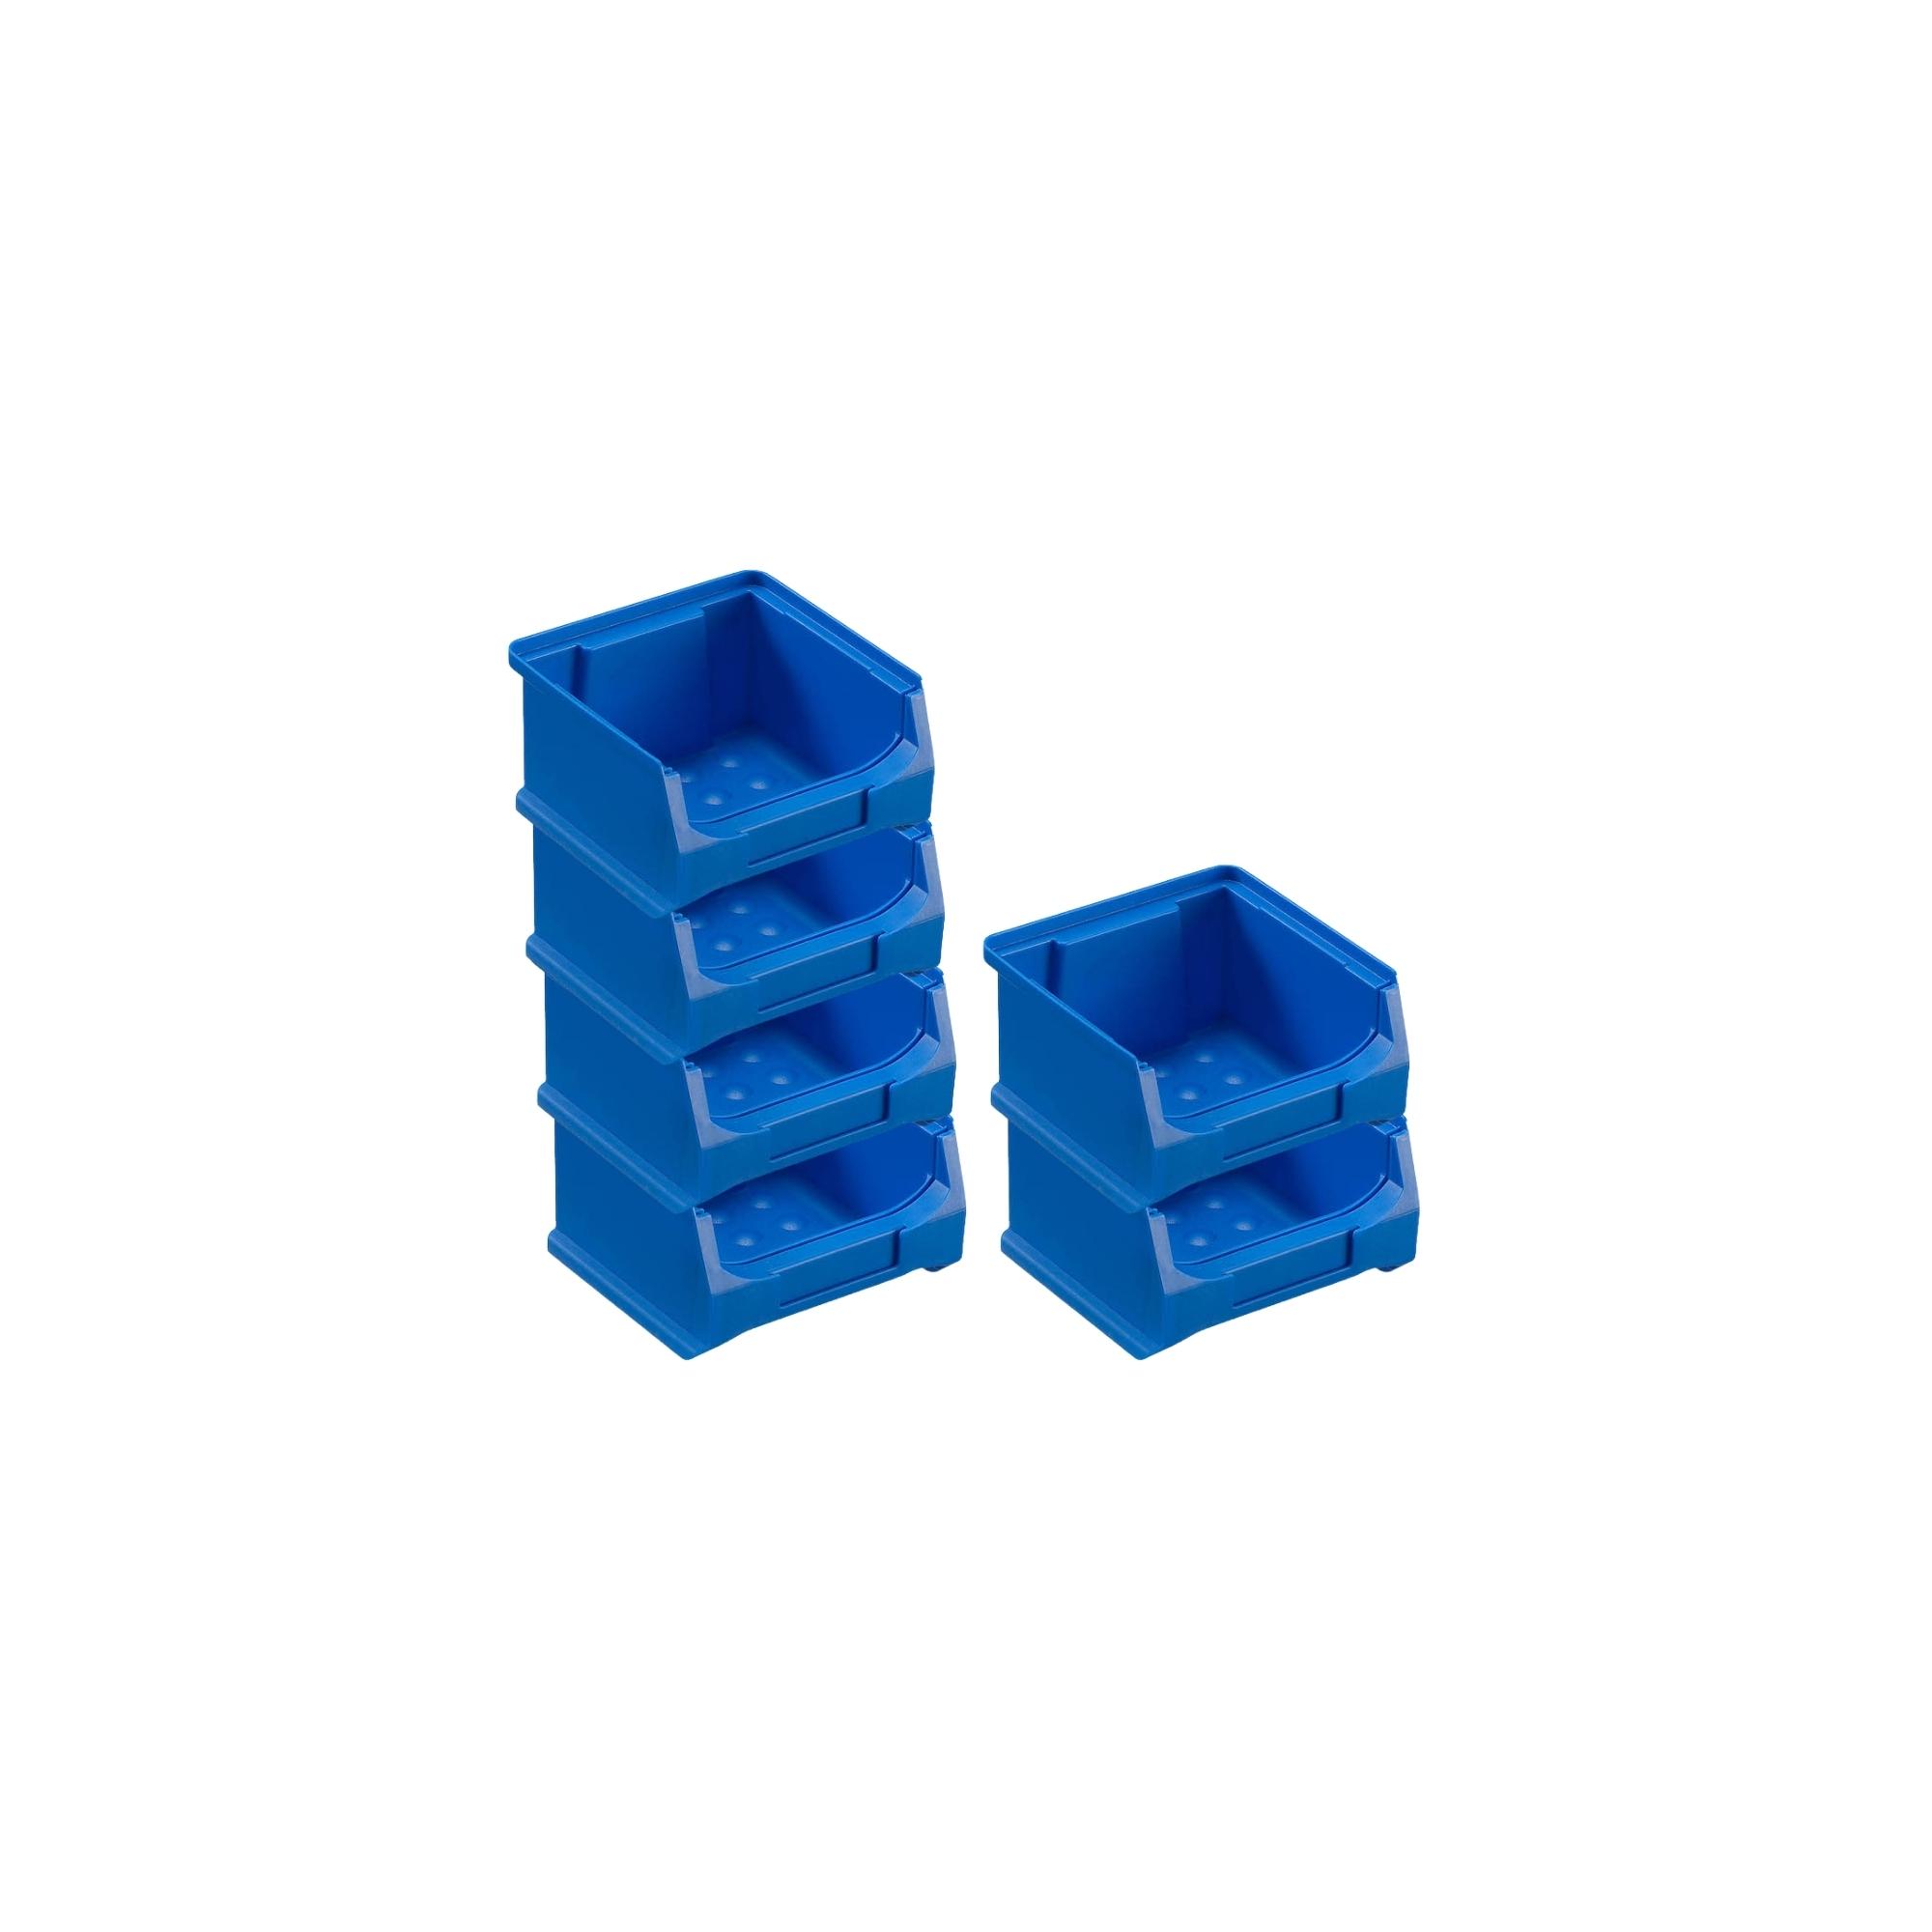 Wandleiste mit 6x Blaue Sichtlagerbox 1.0 mit Abdeckung | HxBxT 6,1x60,5x10cm | Wandhalterung, Kleinteileaufbewahrung, Sortimentsboxhalterung